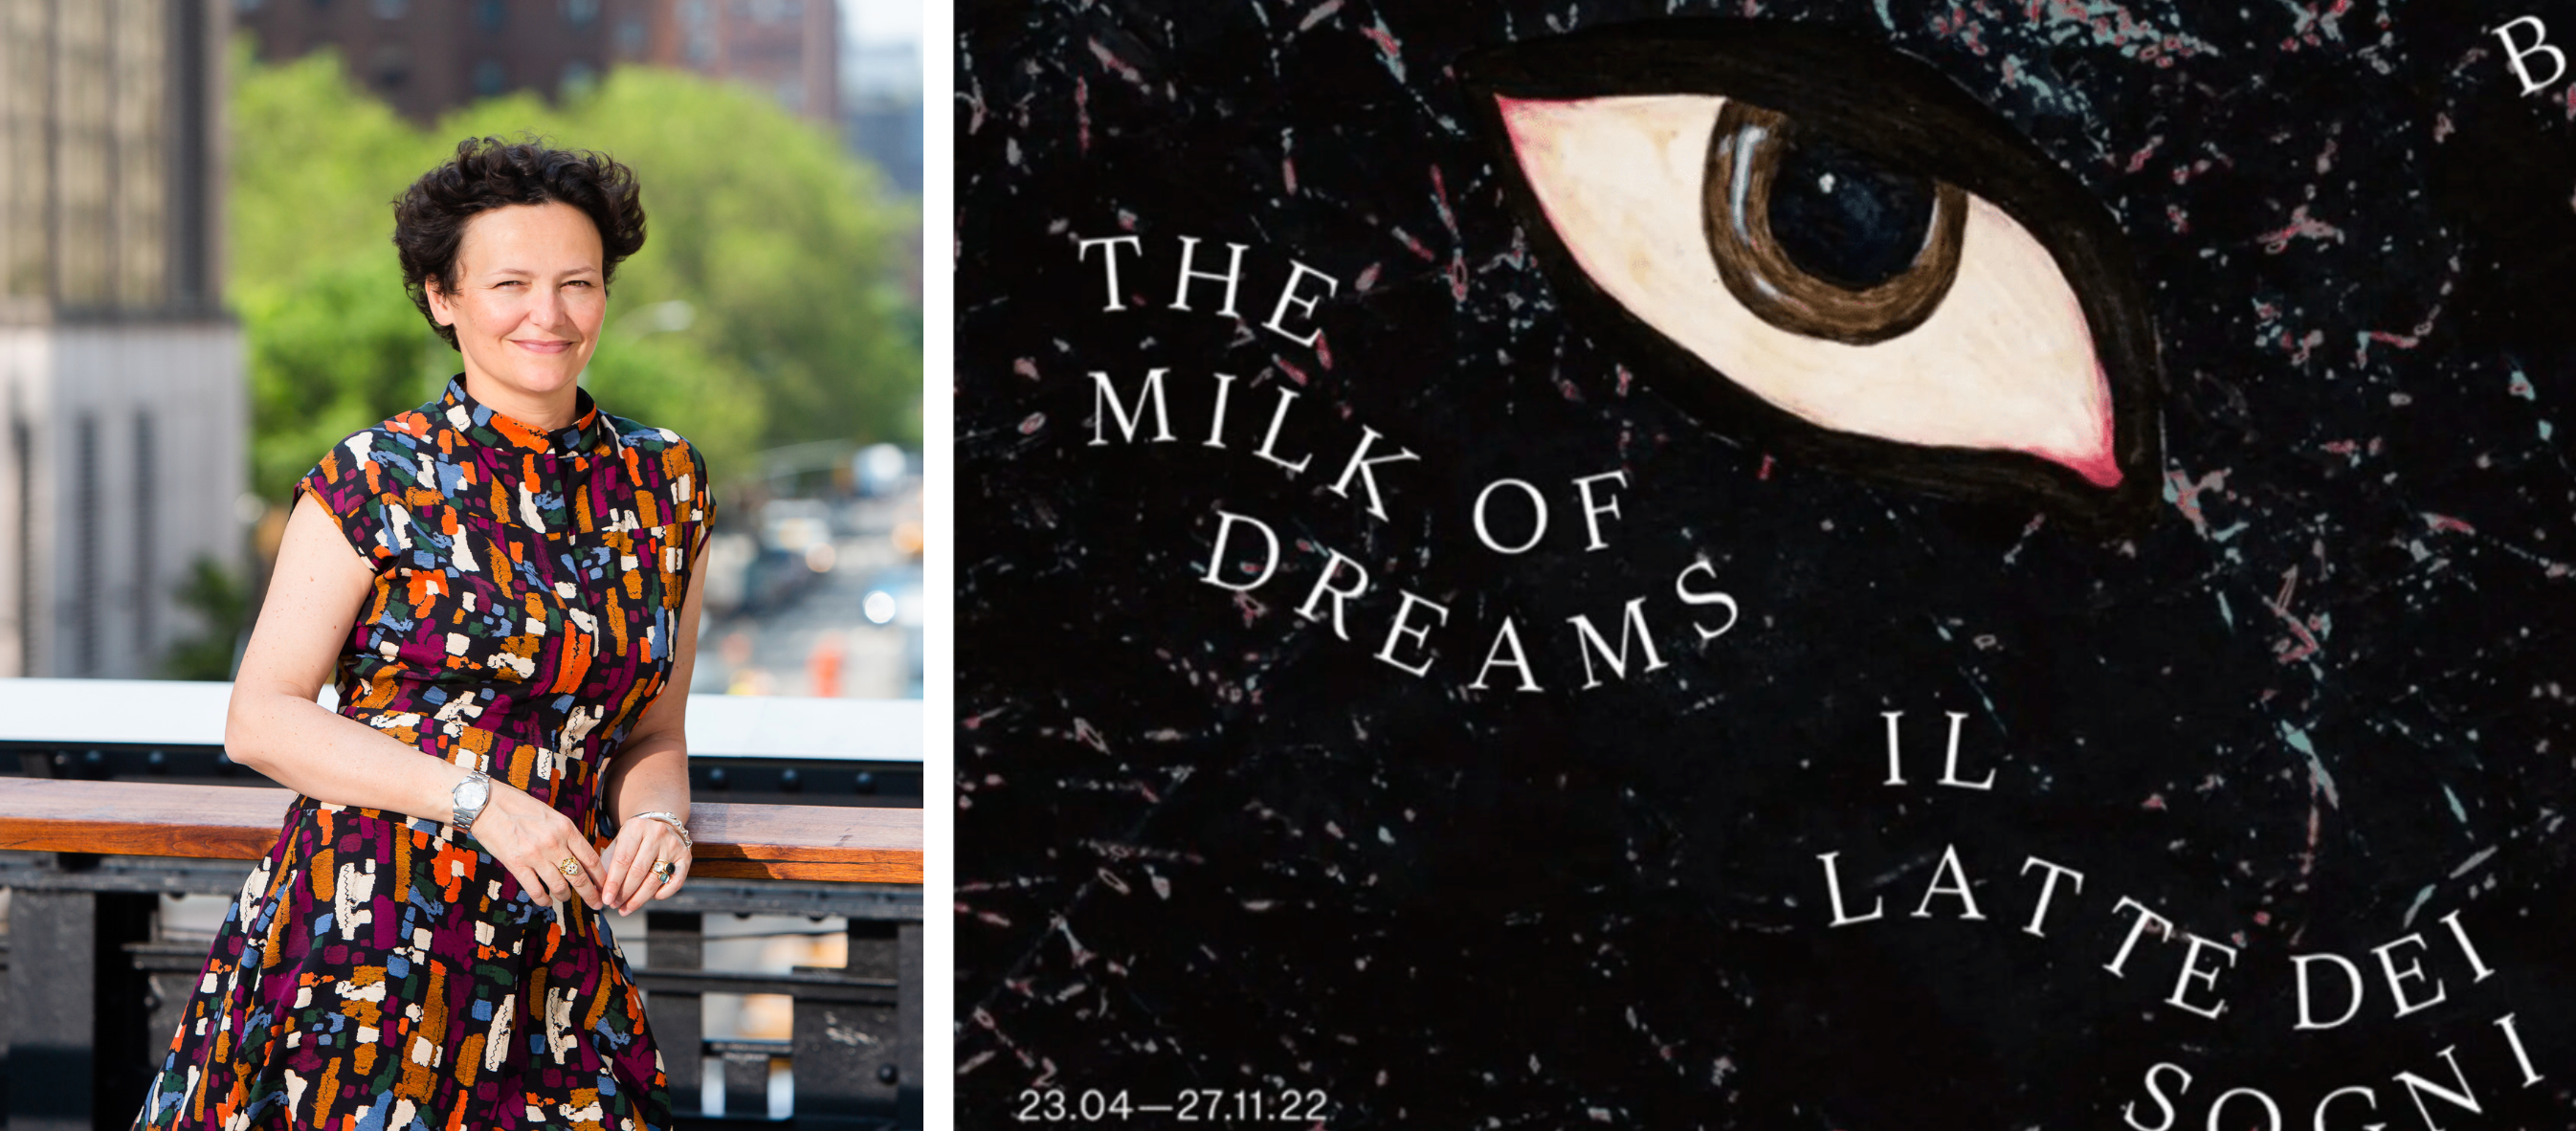 Headshot of Cecilia Alemani; catalog cover for "The Milk of Dreams"